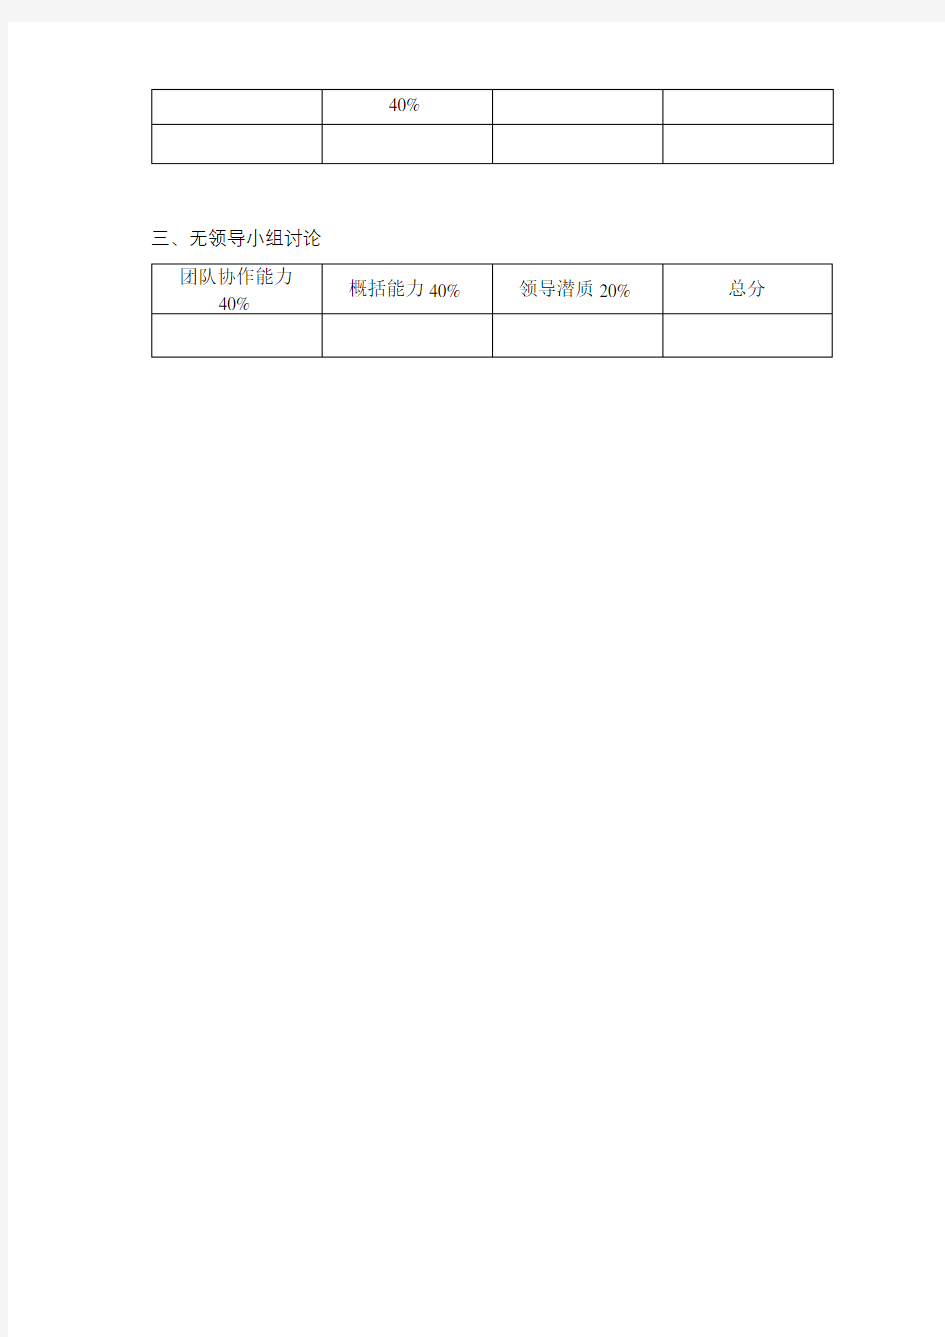 桂林理工大学MTA复试专业测试评分表【模板】